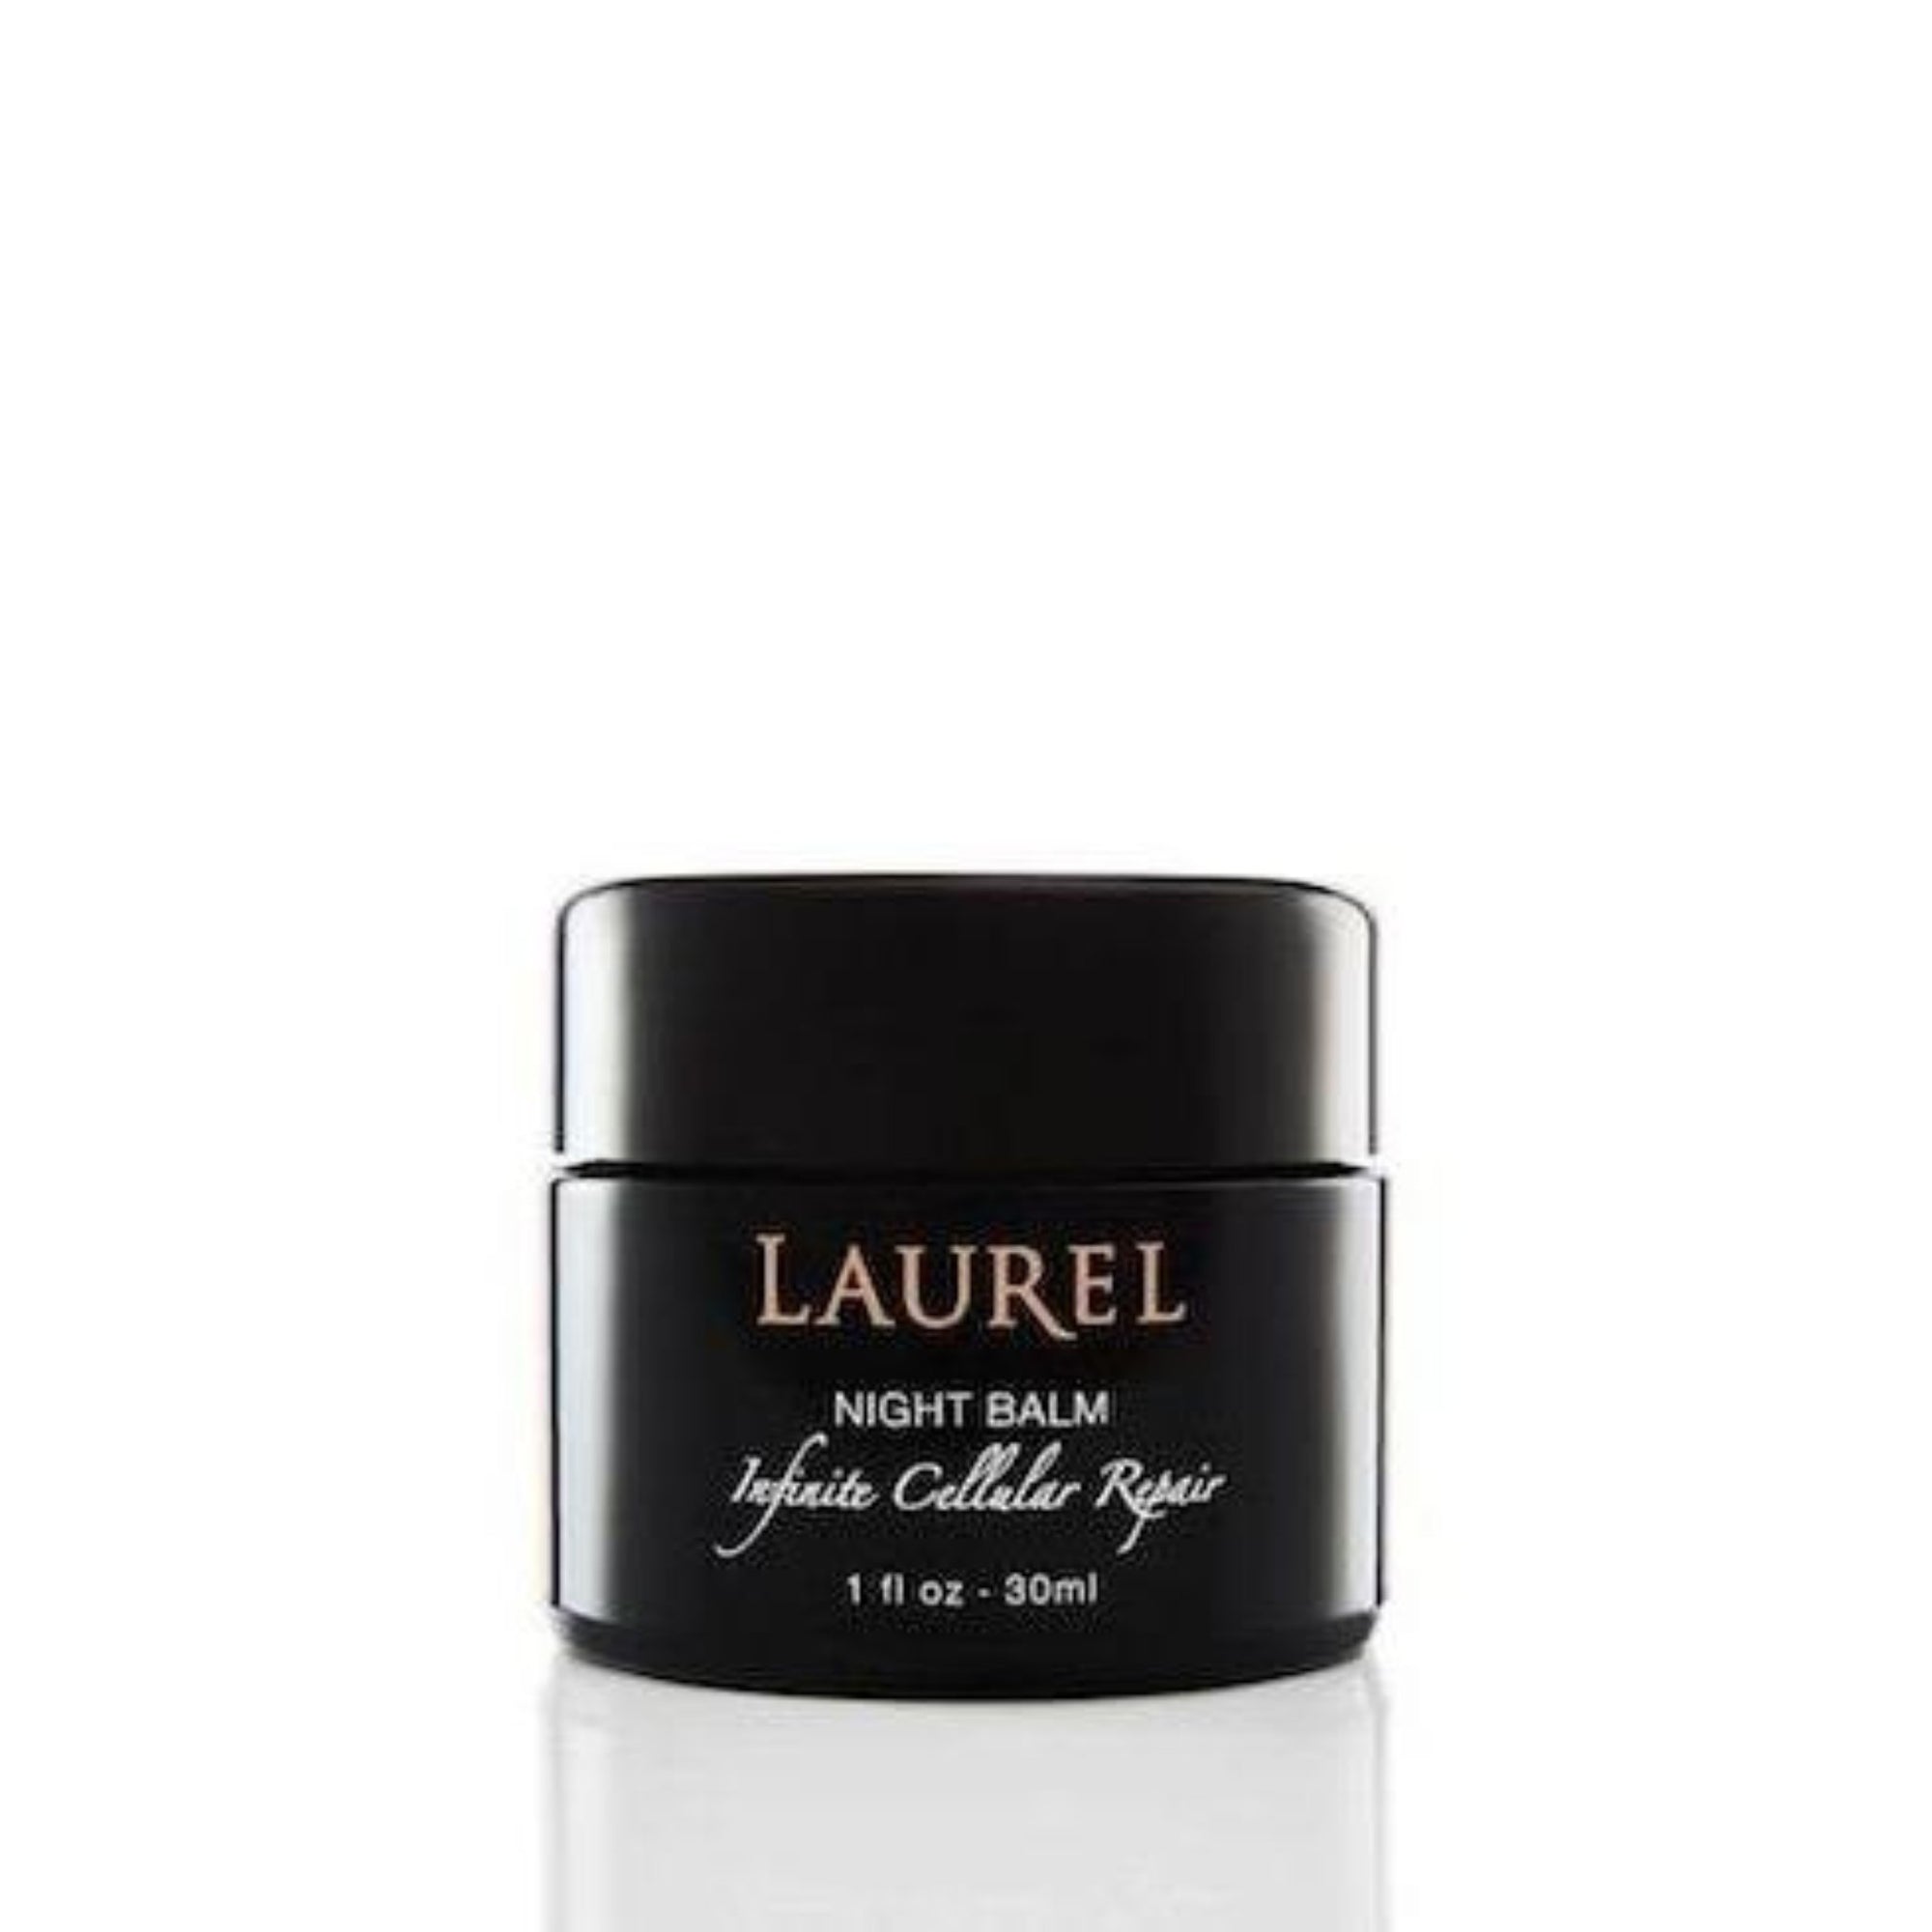 Laurel Skin - Laurel Night Balm - ORESTA clean beauty simplified